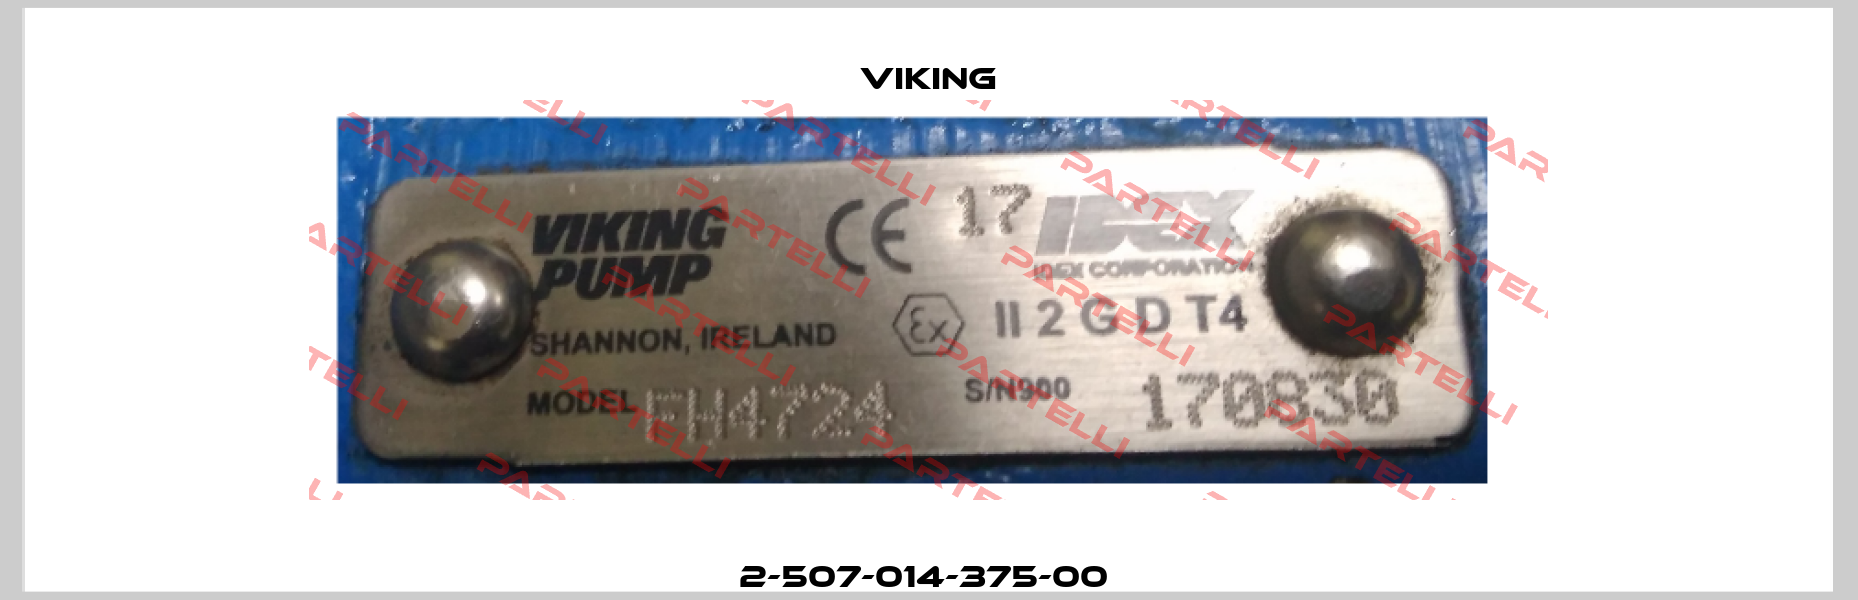 2-507-014-375-00  Viking